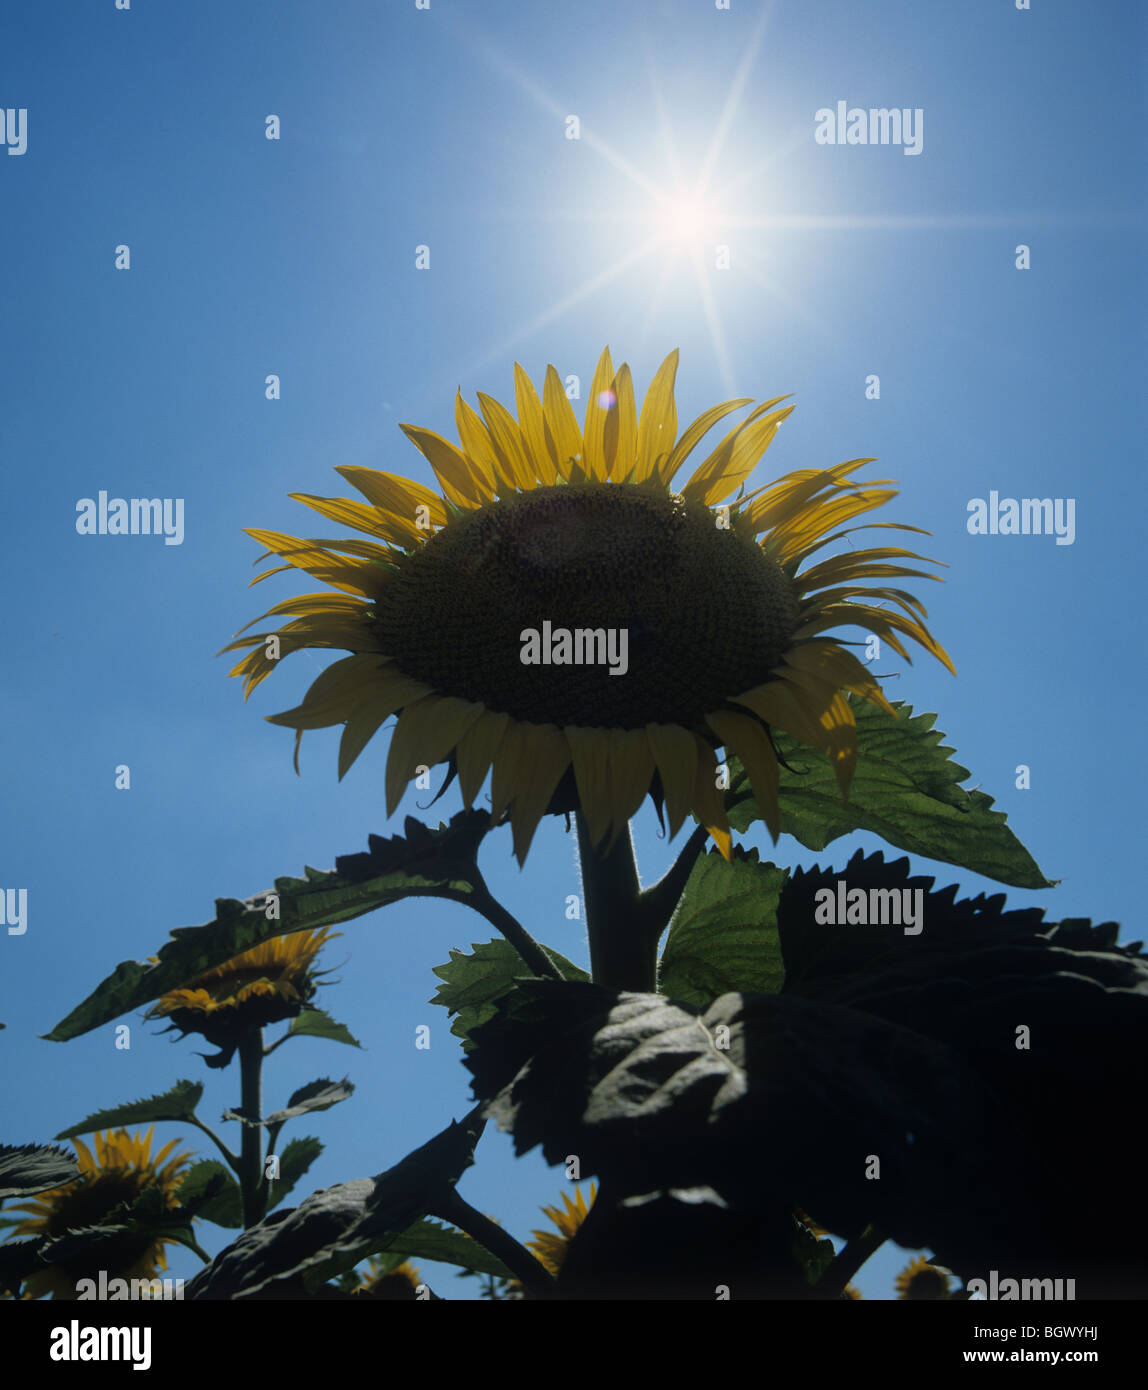 Gelbe Sonnenblume Kopf gegen eine helle Sommersonne Starburst und tiefblauen Himmel, Toskana, Italien Stockfoto